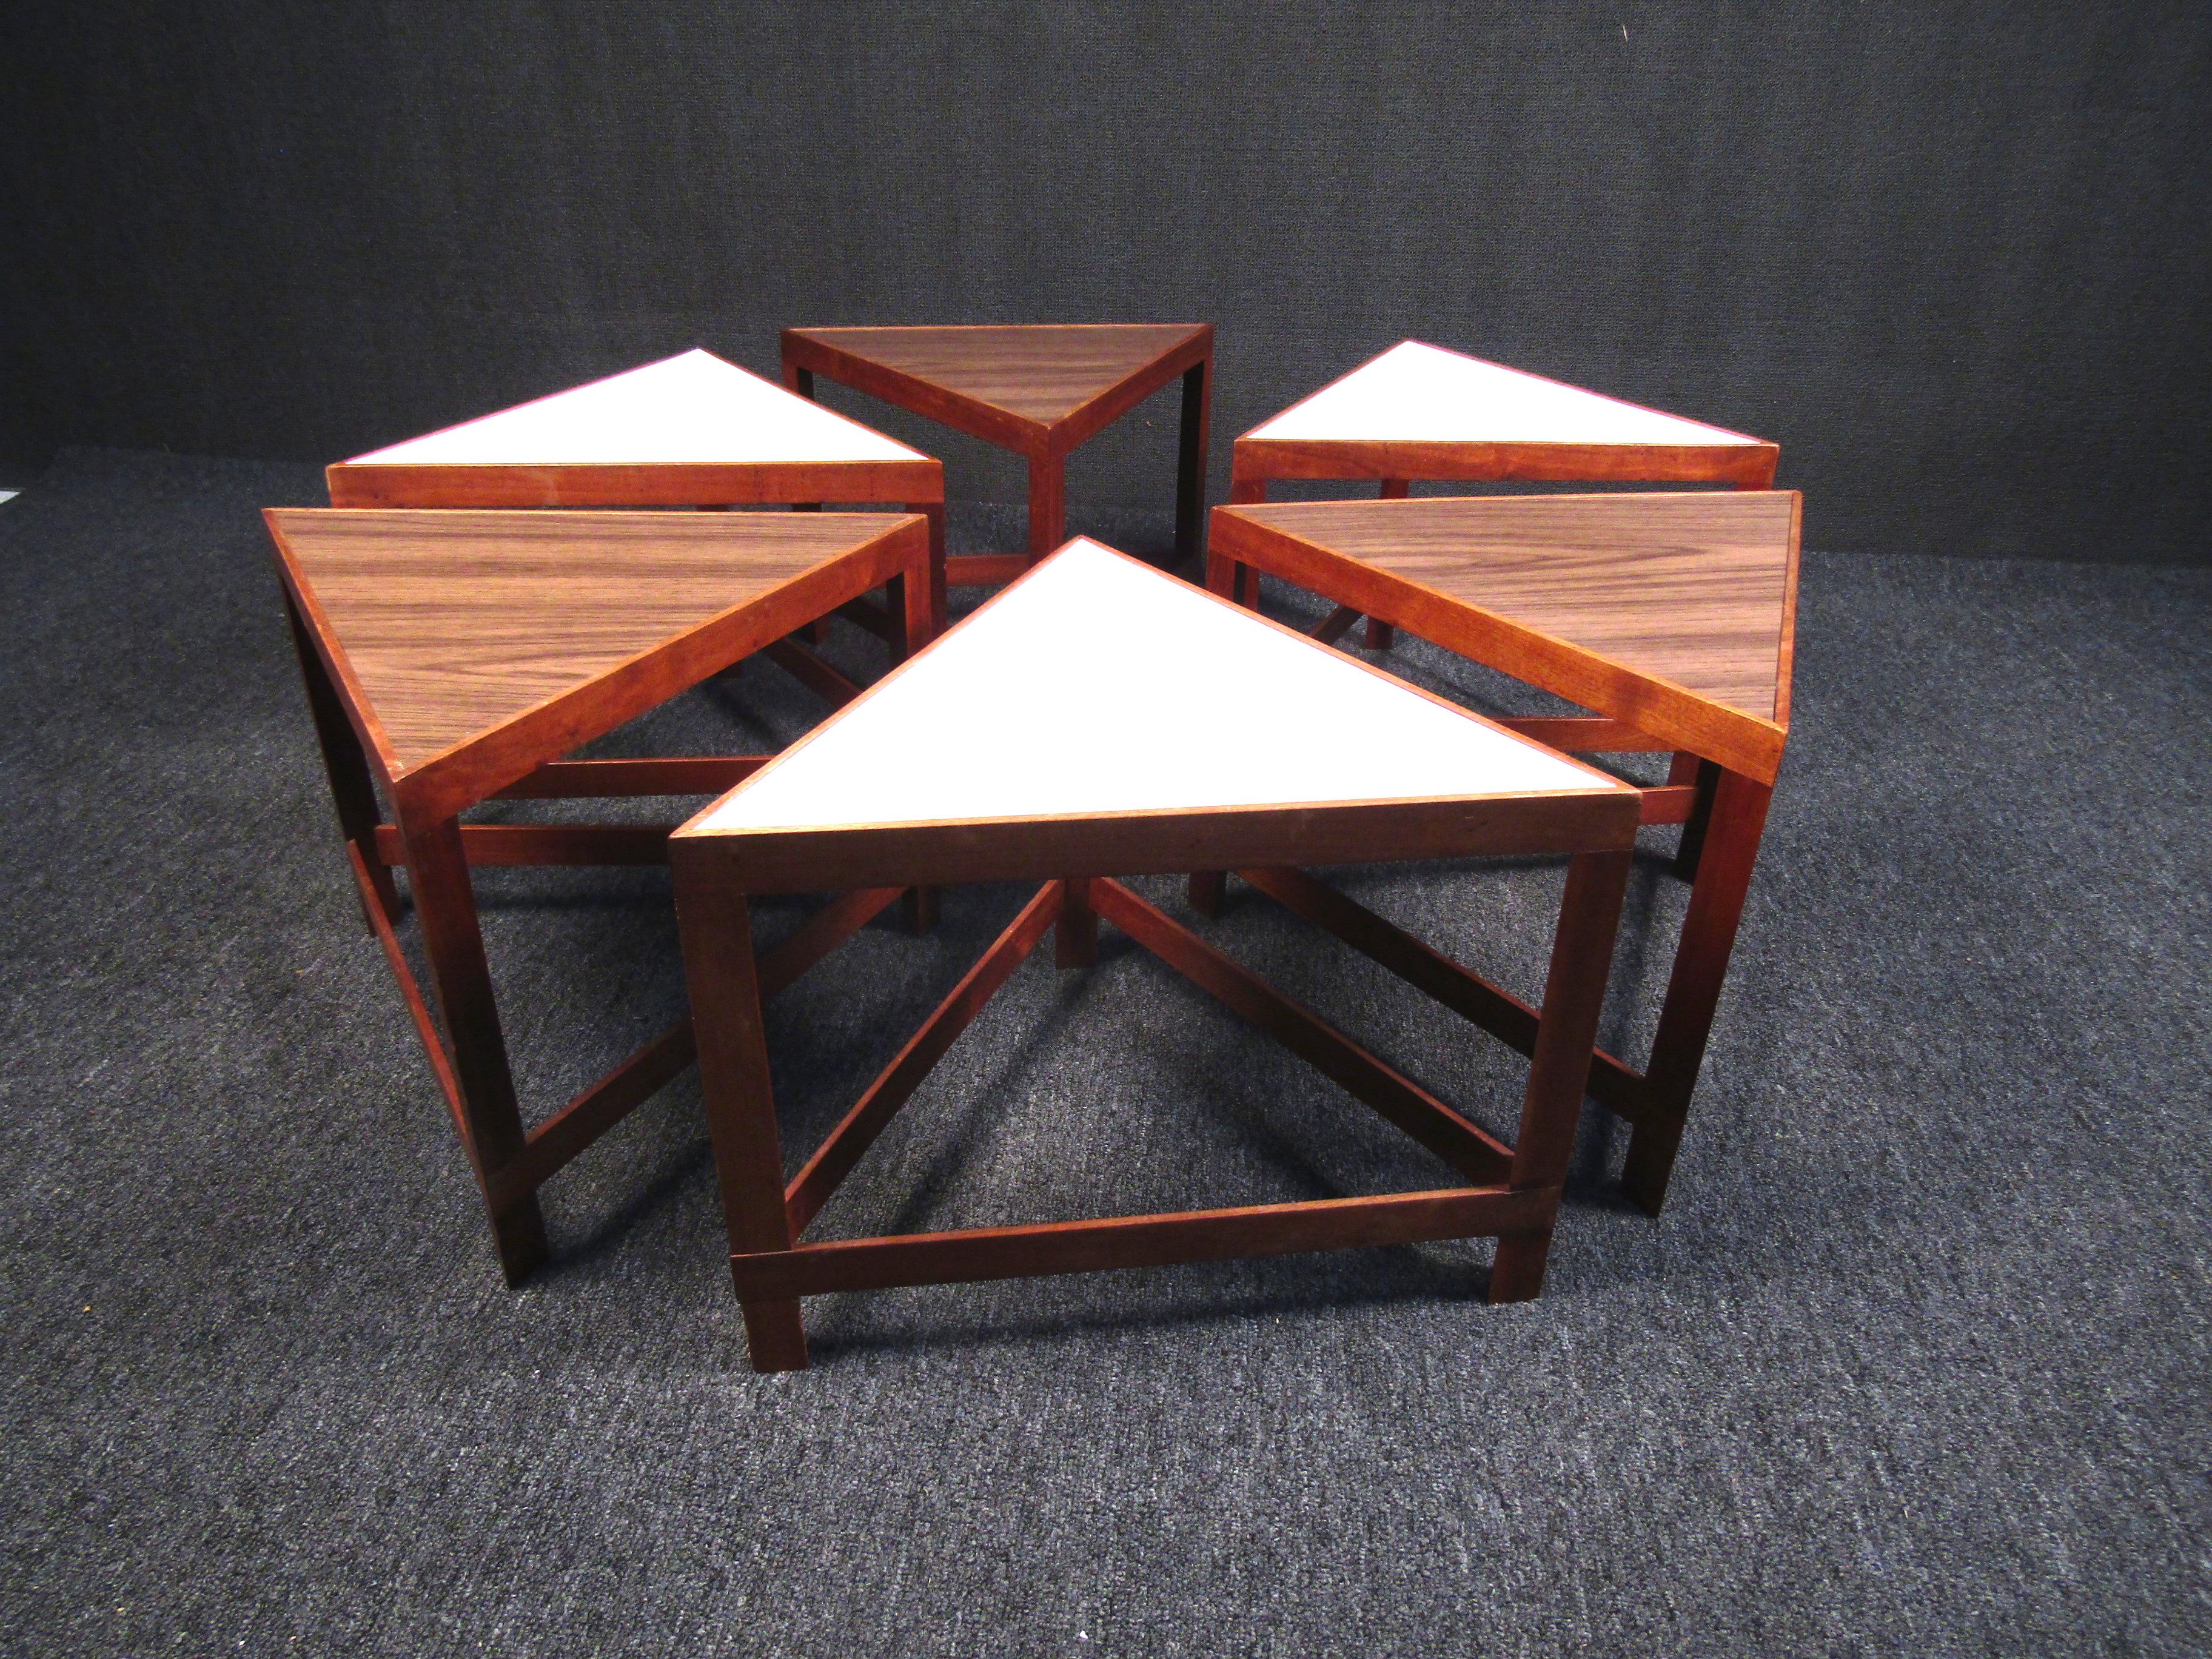 Sehr ungewöhnlicher dänischer Tisch - bestehend aus 6 separaten dreieckigen Teilen, die zusammengesetzt einen sechseckigen Couchtisch ergeben. Ein einzigartiges Stück, das eine interessante Ergänzung für jede moderne Einrichtung darstellt. Bitte